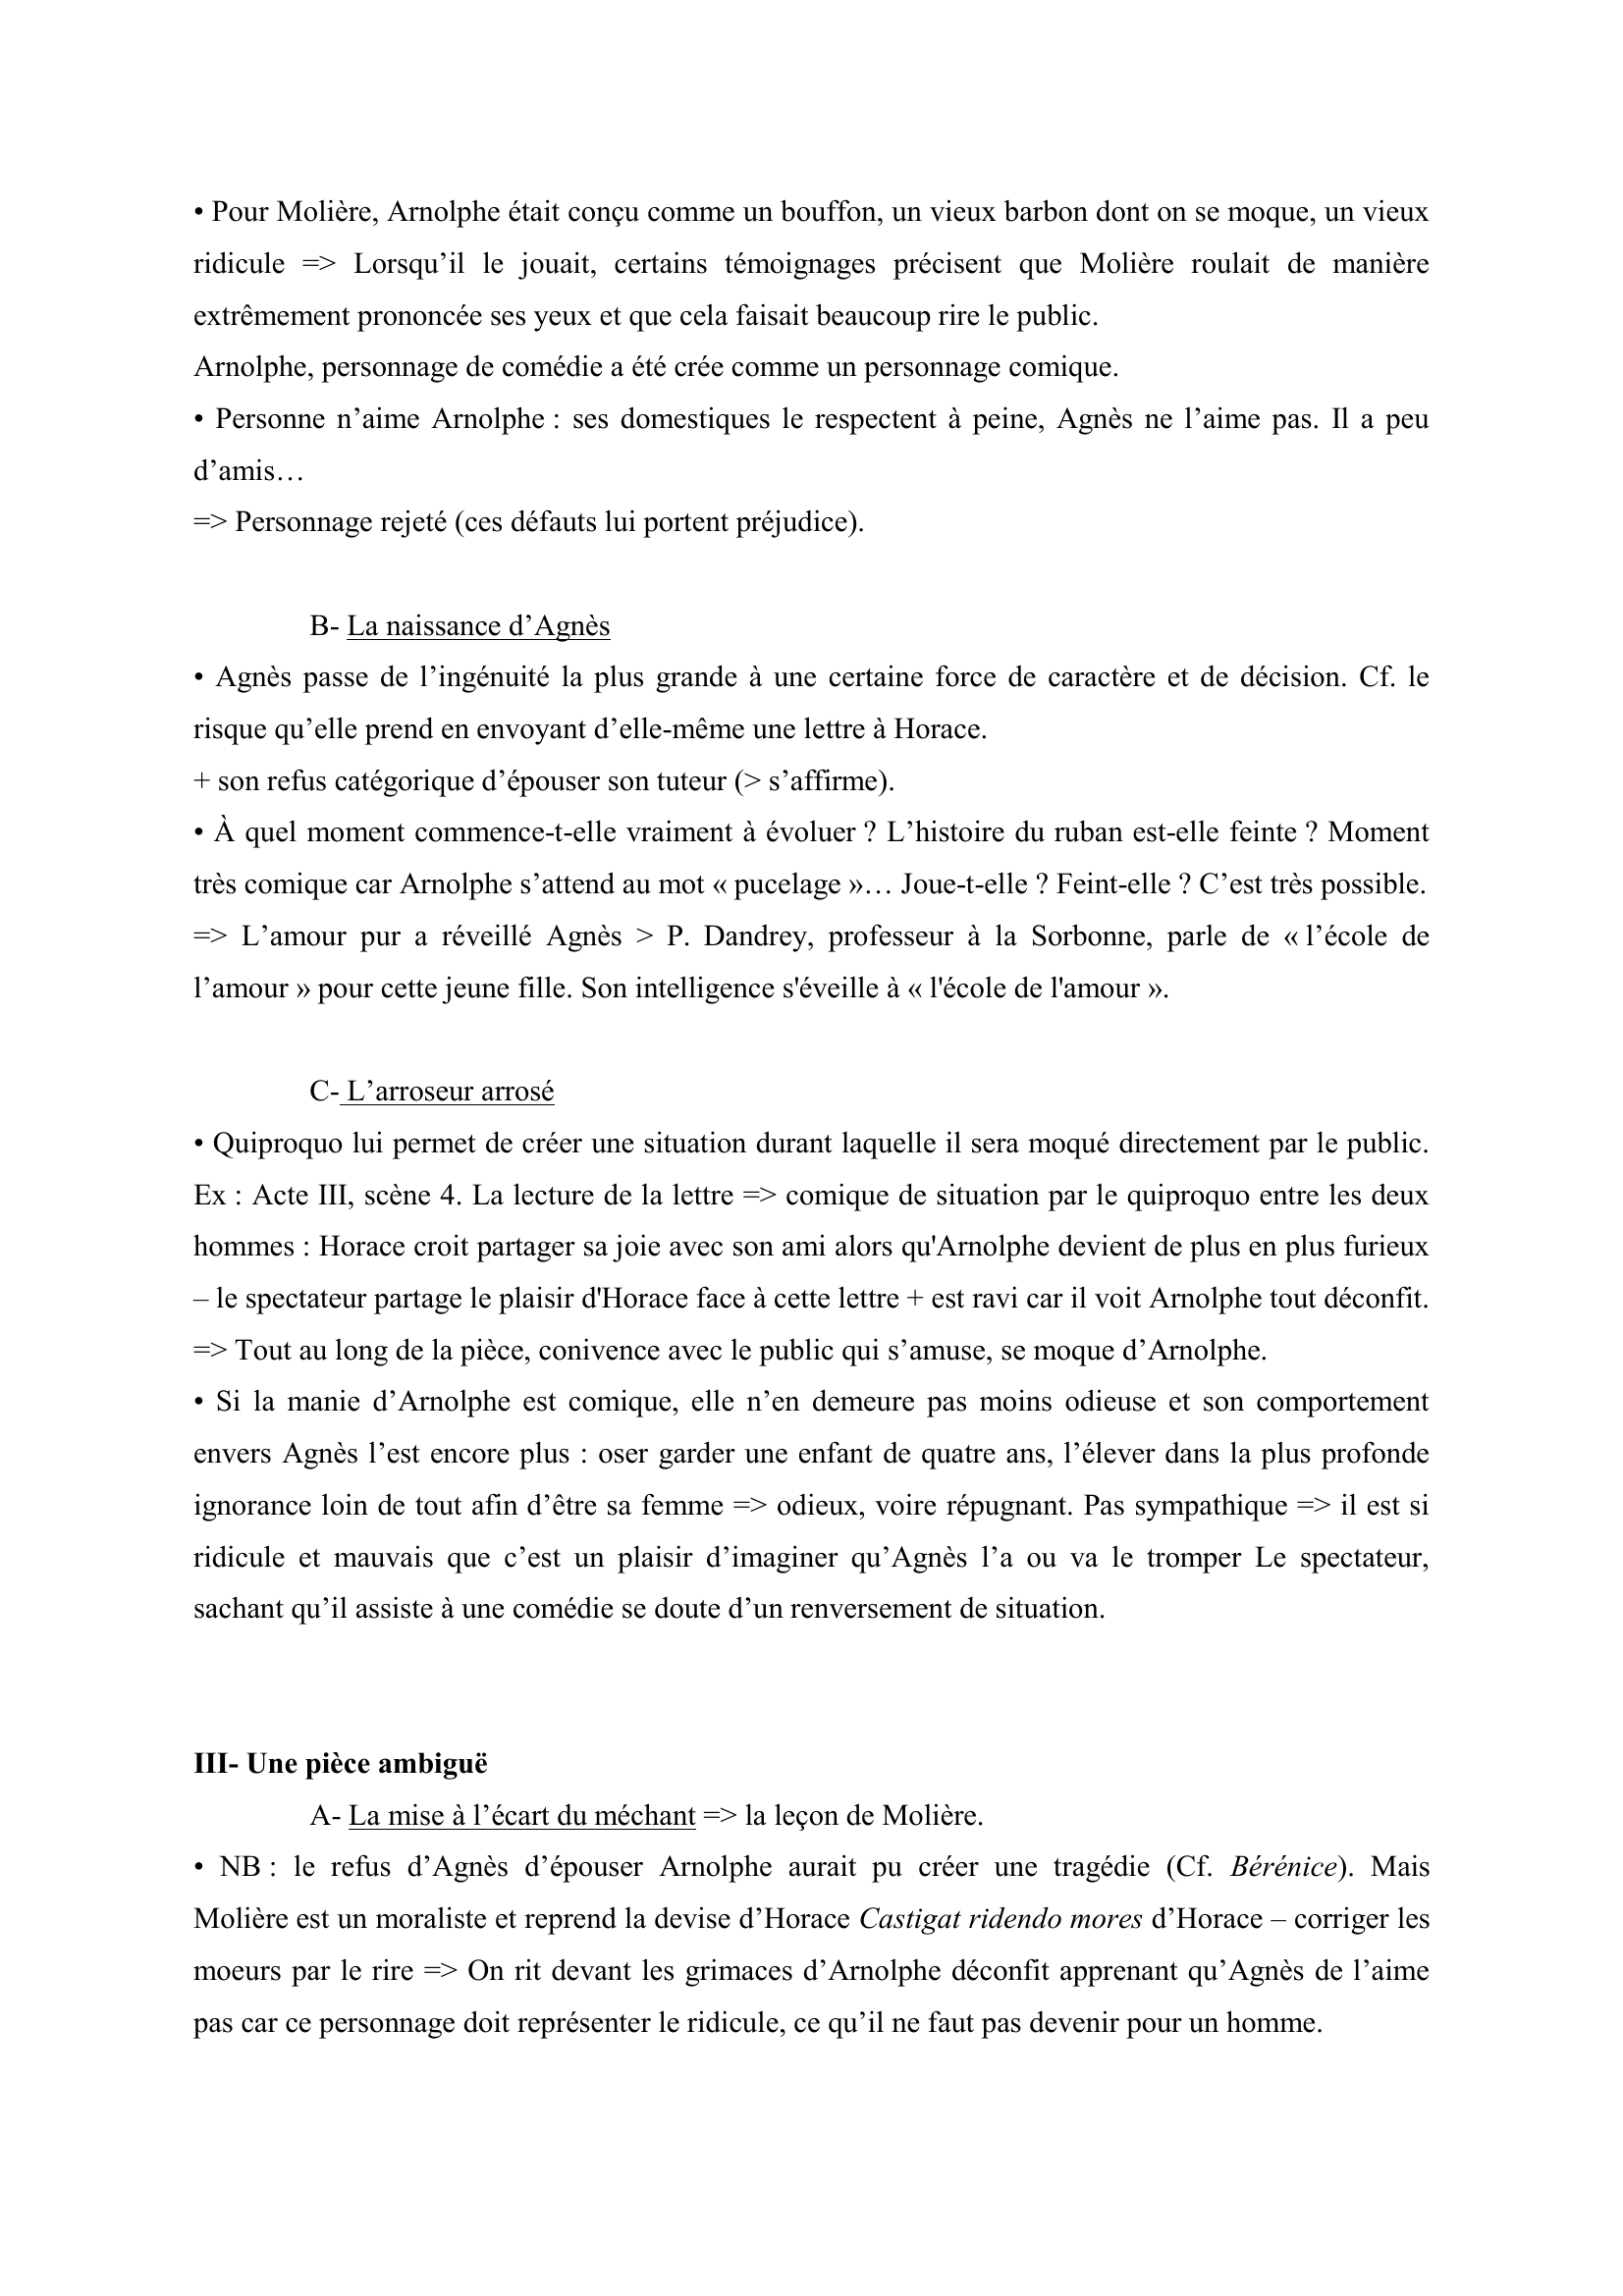 Prévisualisation du document En quoi L’École des Femmes de Molière illustre bien la citation latine : castigat ridendo mores